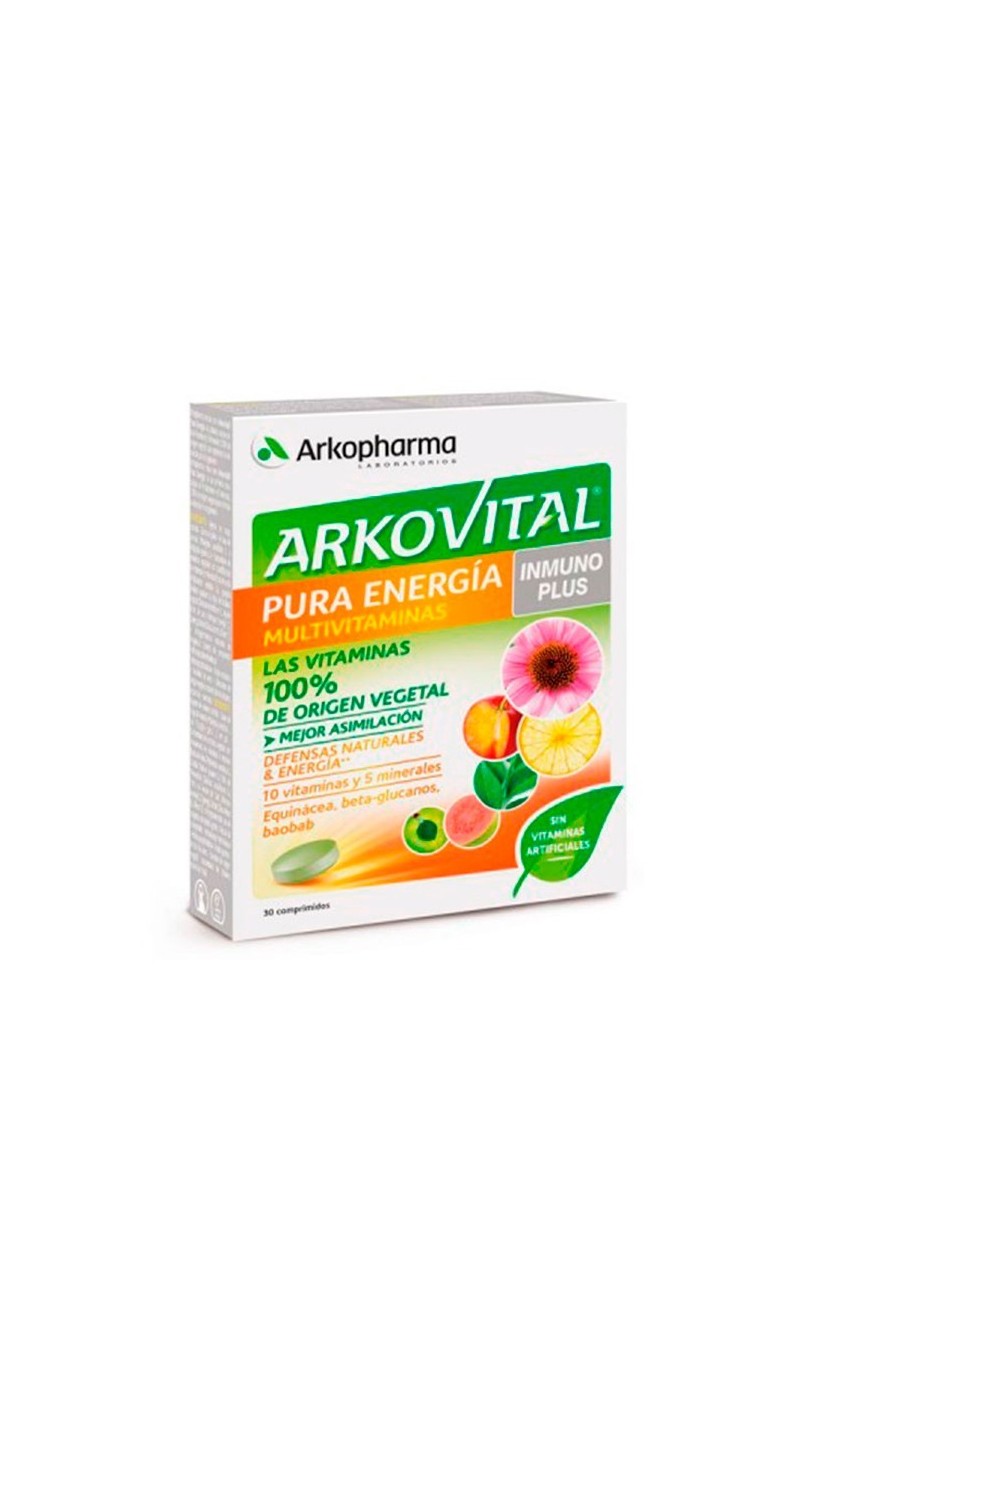 Arkopharma Arkovital Inmunoplus Pure Energy 30 Tablets